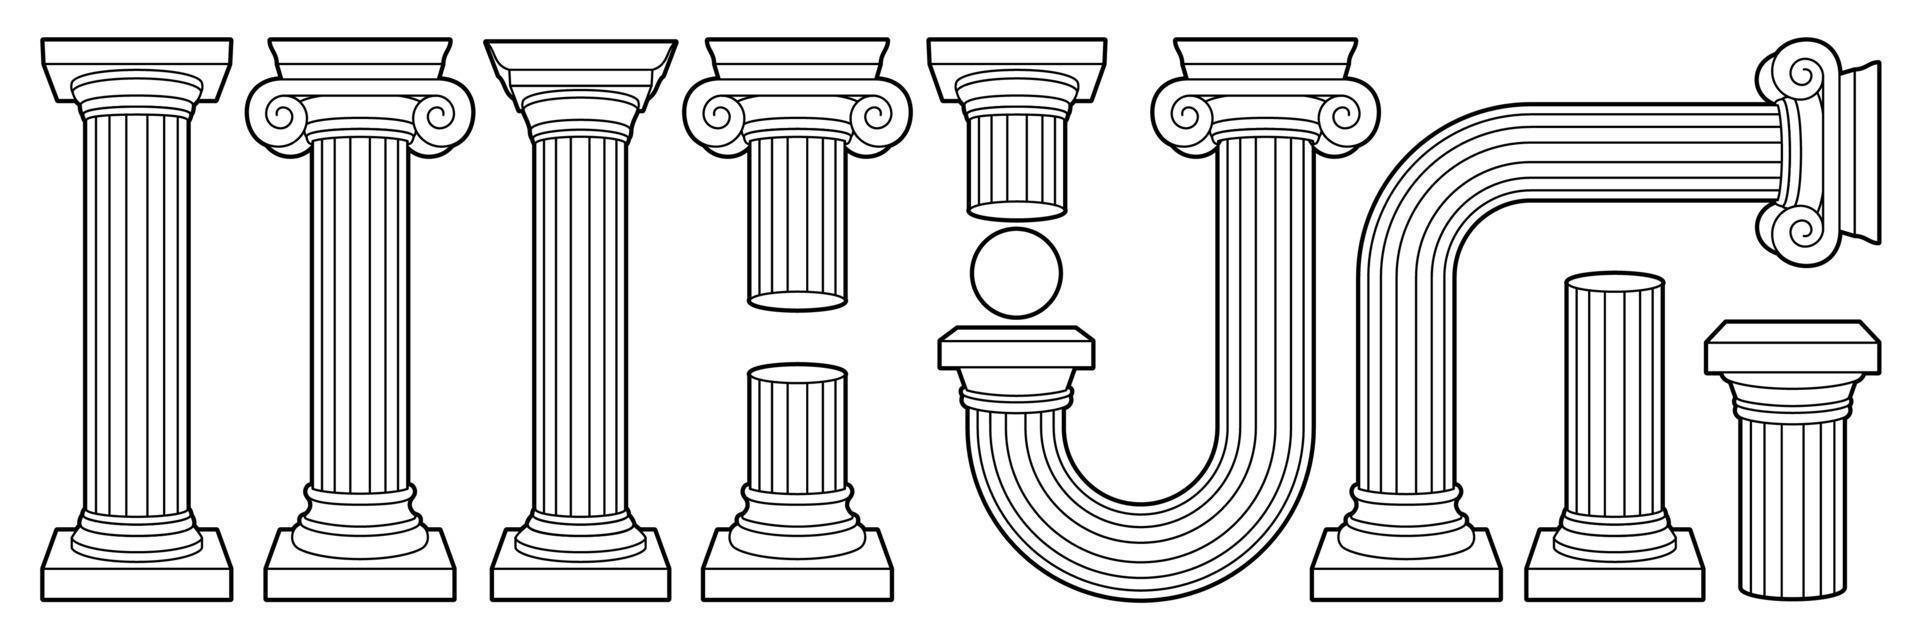 grekisk gammal kolumn, pelare, piedestal i översikt samtida stil. svart och vit färger. vektor